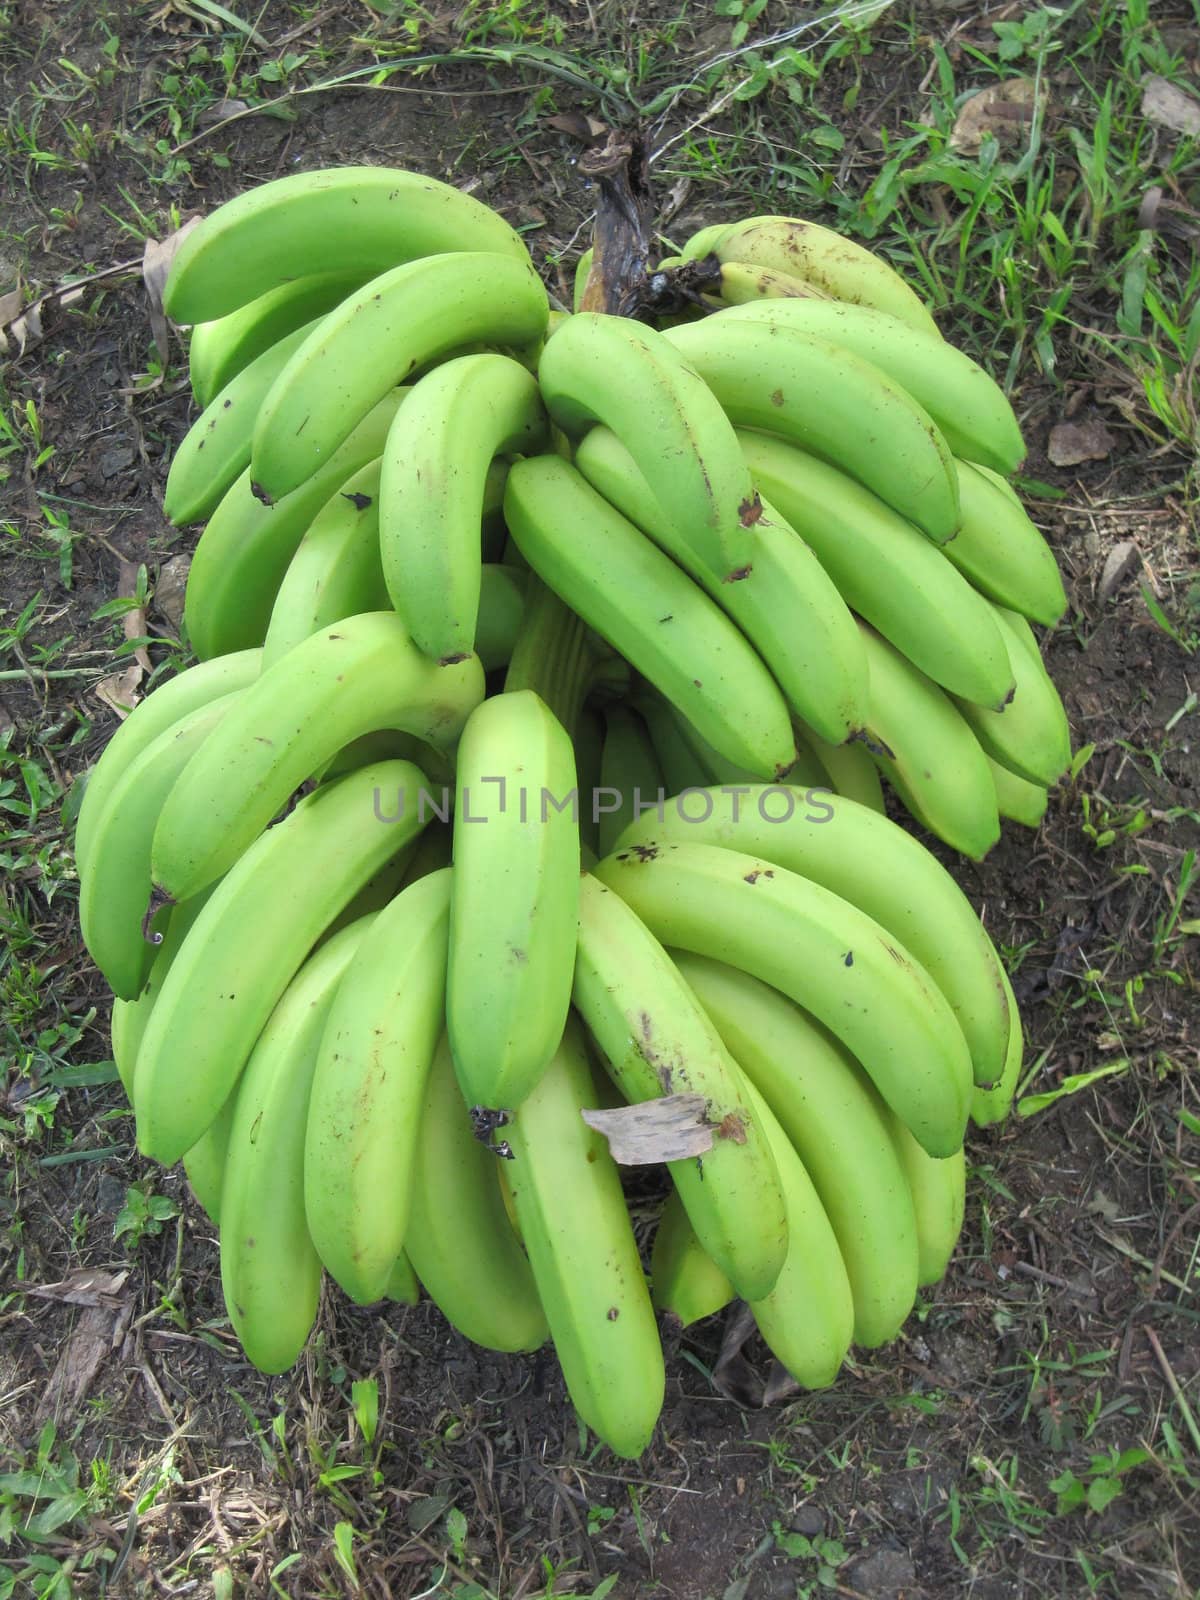 Bananas by sainaniritu